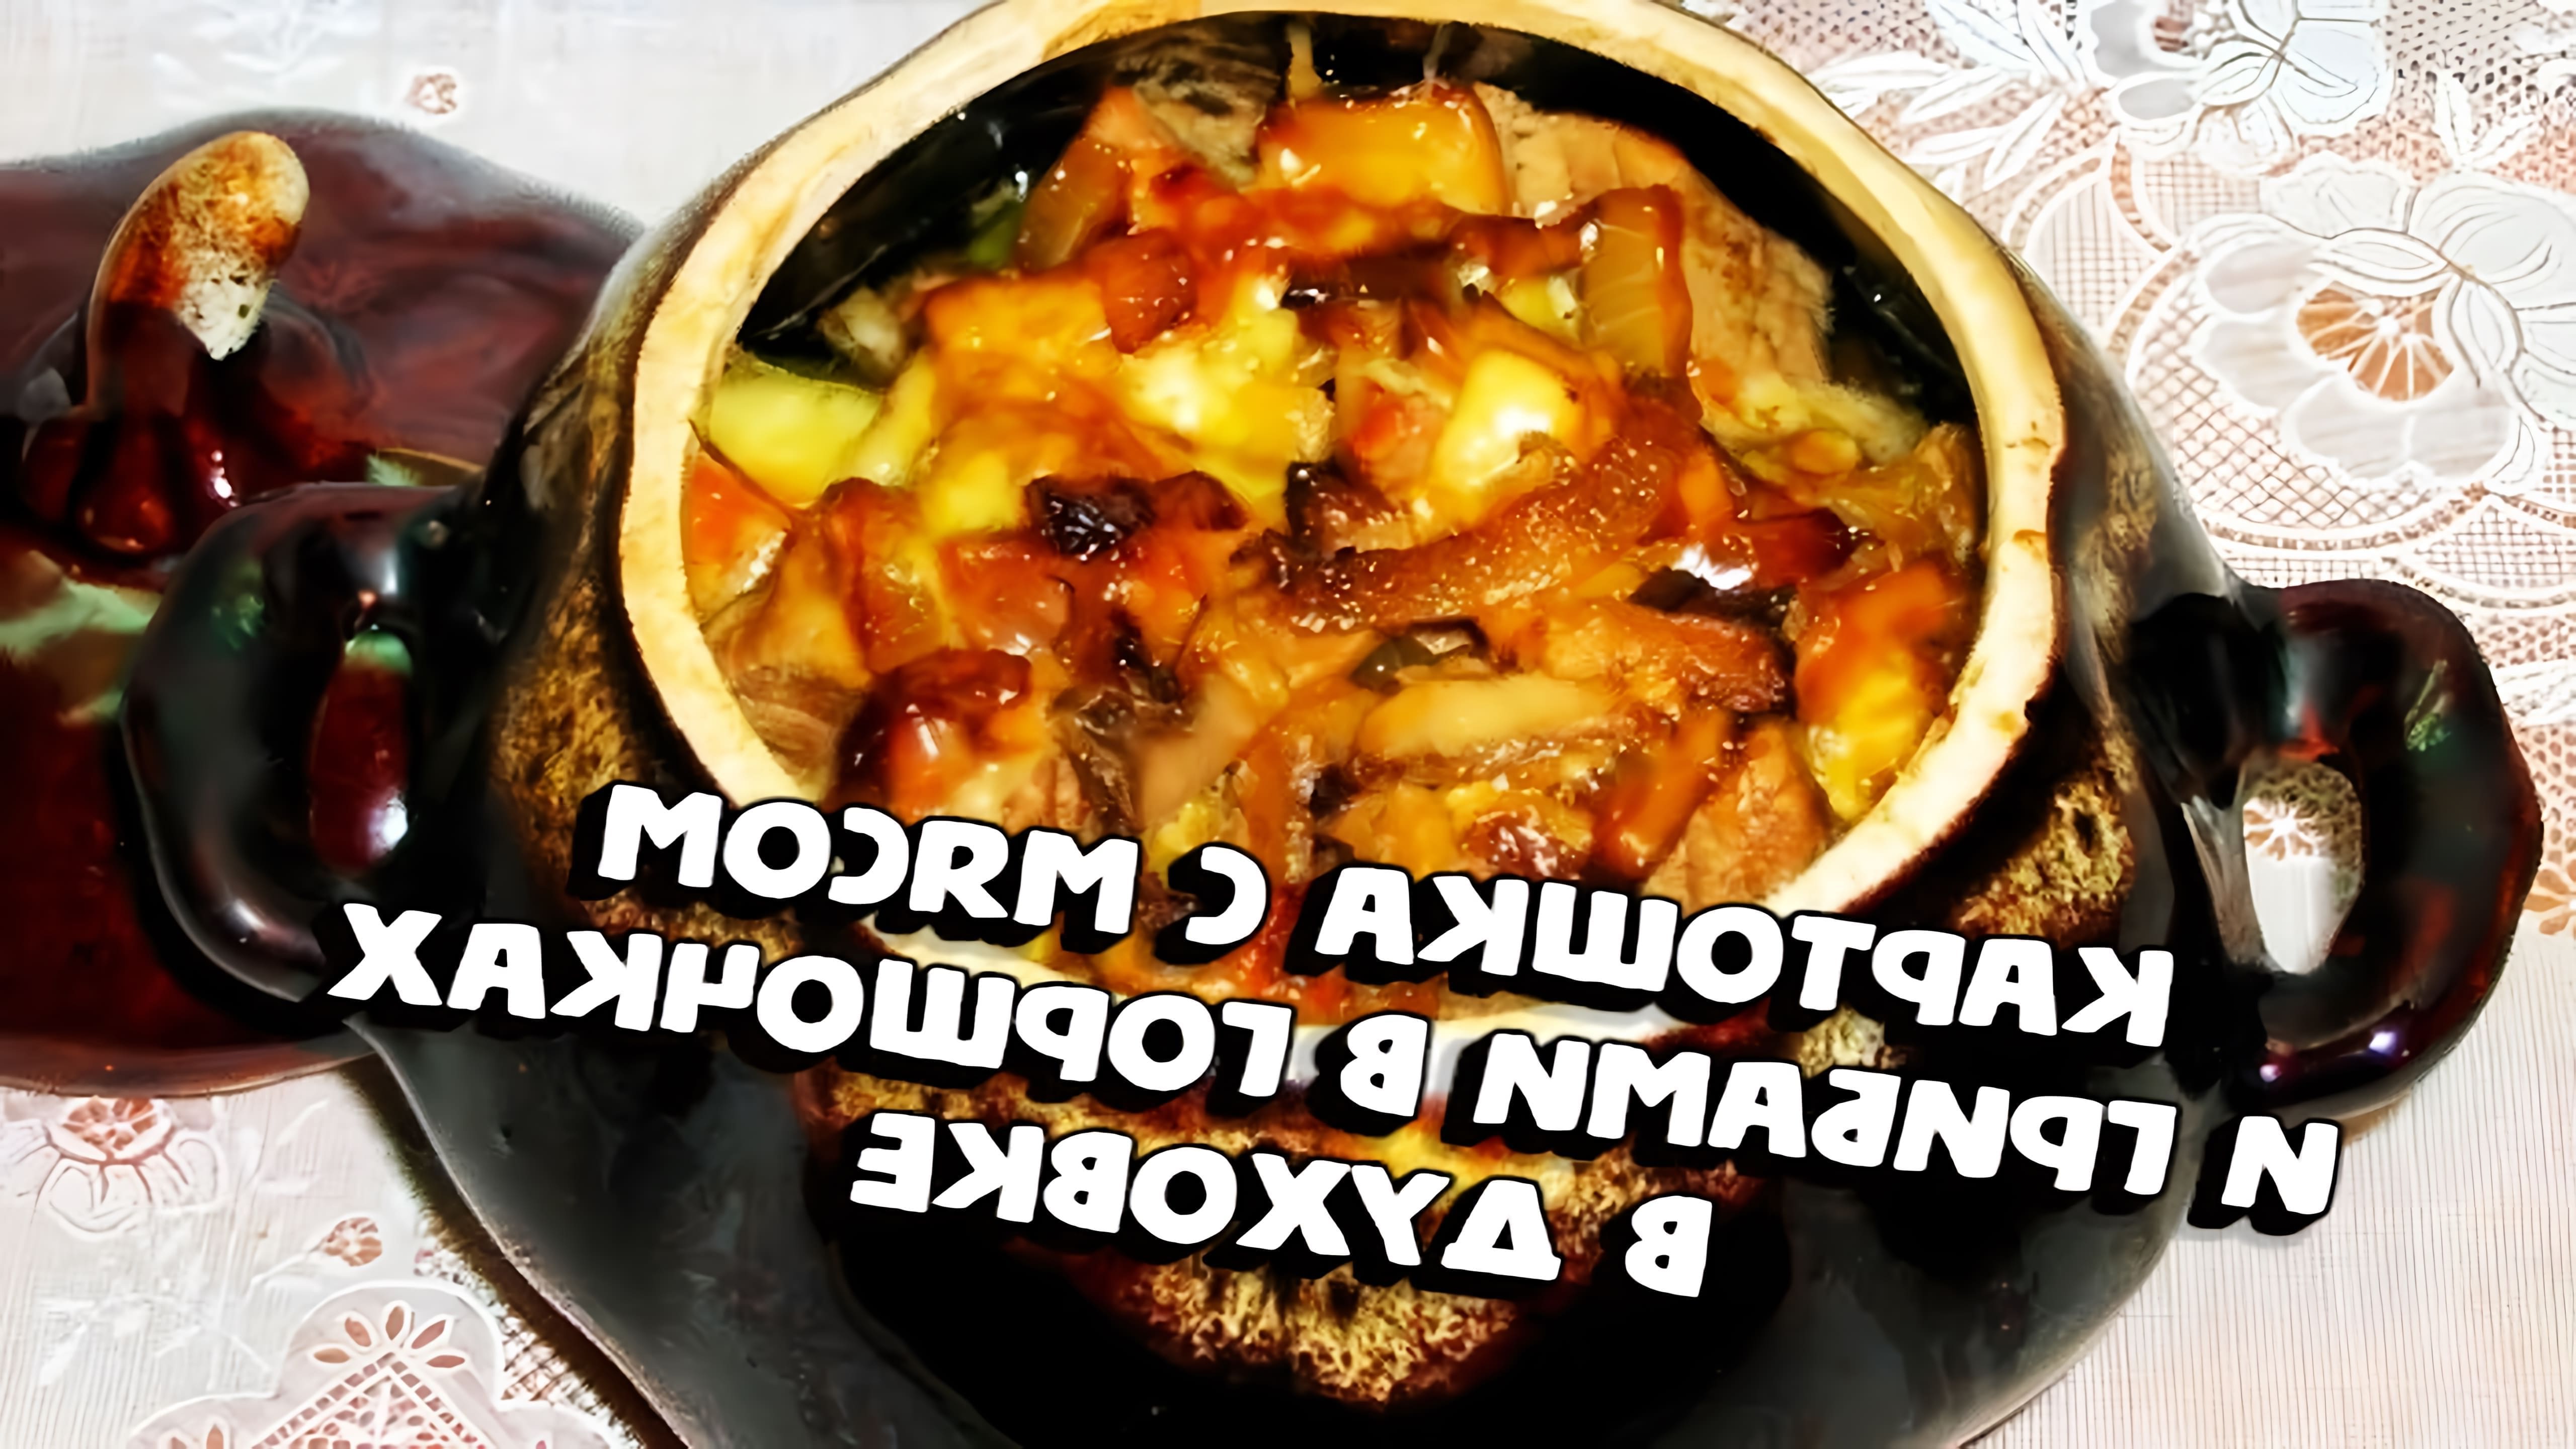 В данном видео демонстрируется процесс приготовления блюда "Картошка с мясом и грибами в горшочках в духовке"